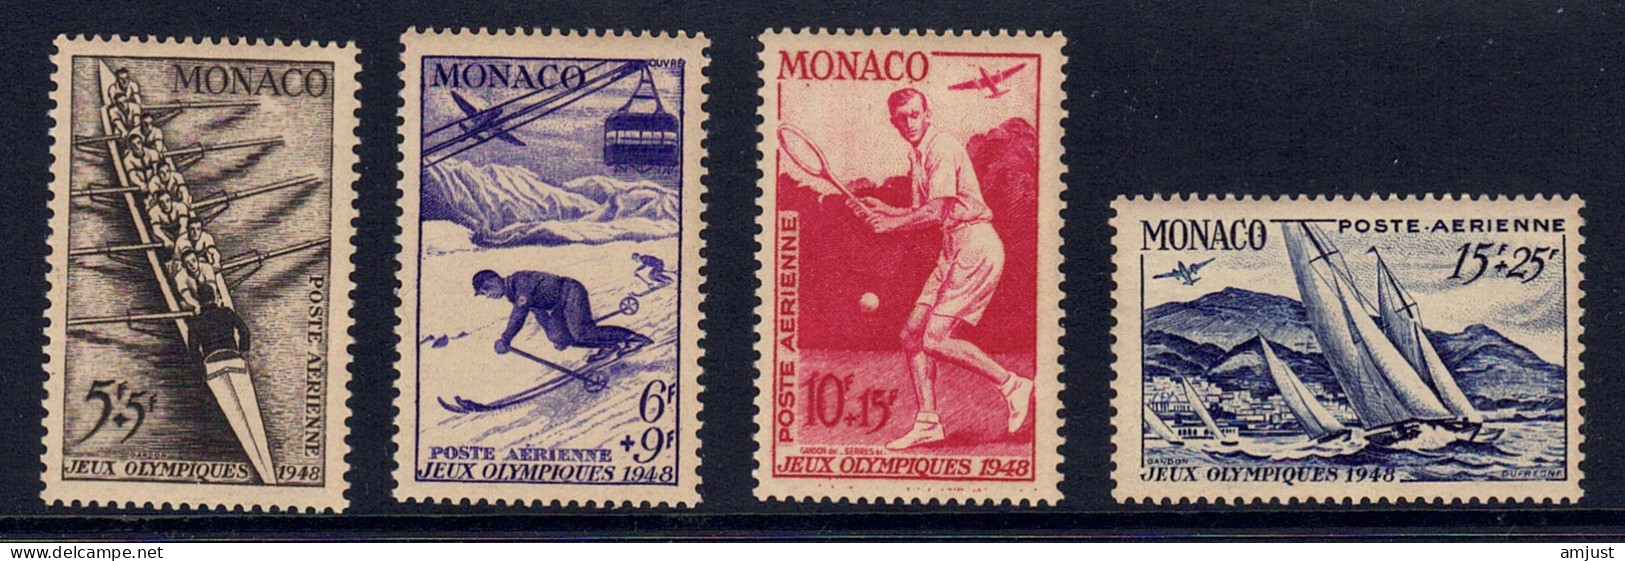 Monaco // Poste Aérienne1948  // Jeux Olympiques De Londres  Timbres Neufs** MNH  No. Y&T 32 à 35 - Posta Aerea